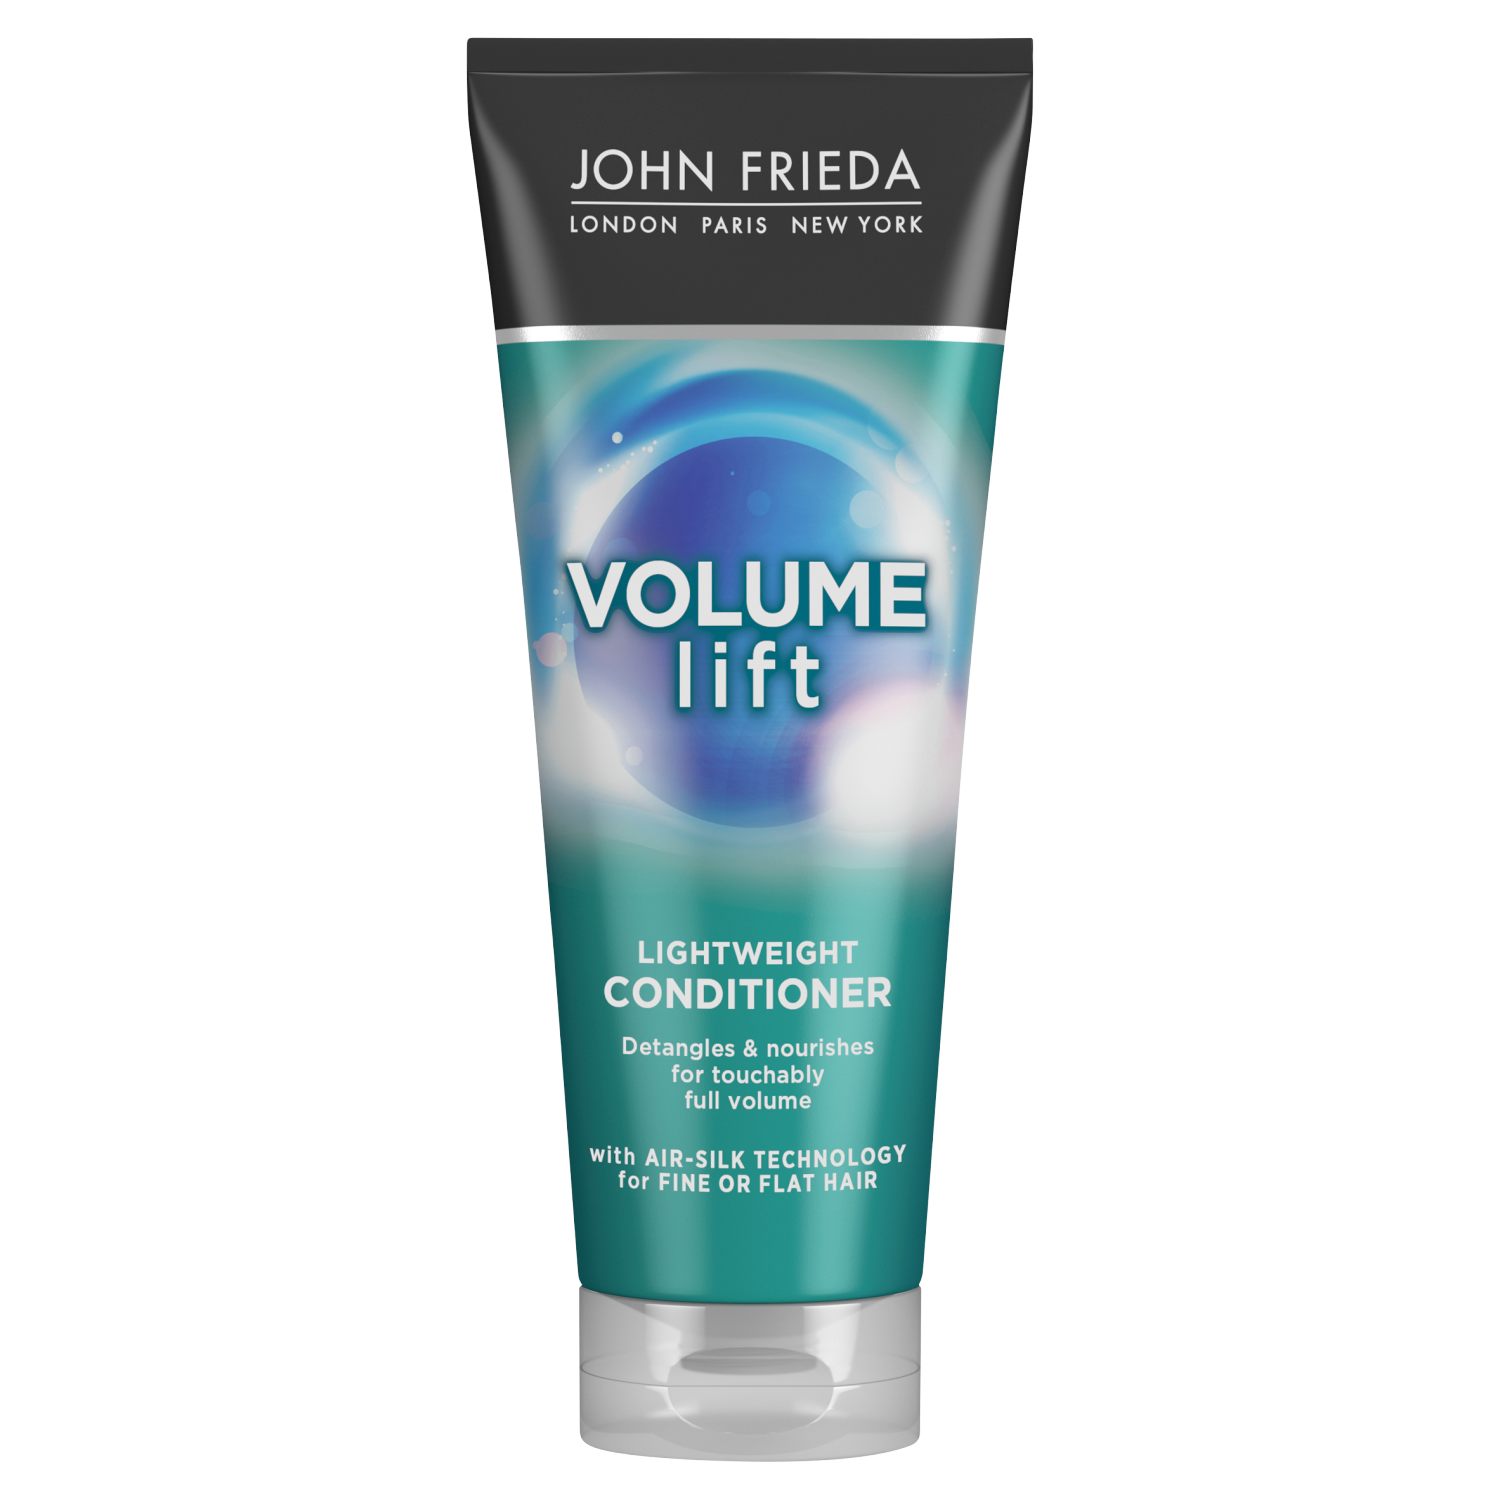 John Frieda Luxurious Volume кондиционер для объема волос, 250 мл кондиционер john frieda volume lift для создания естественного объема волос 250 мл